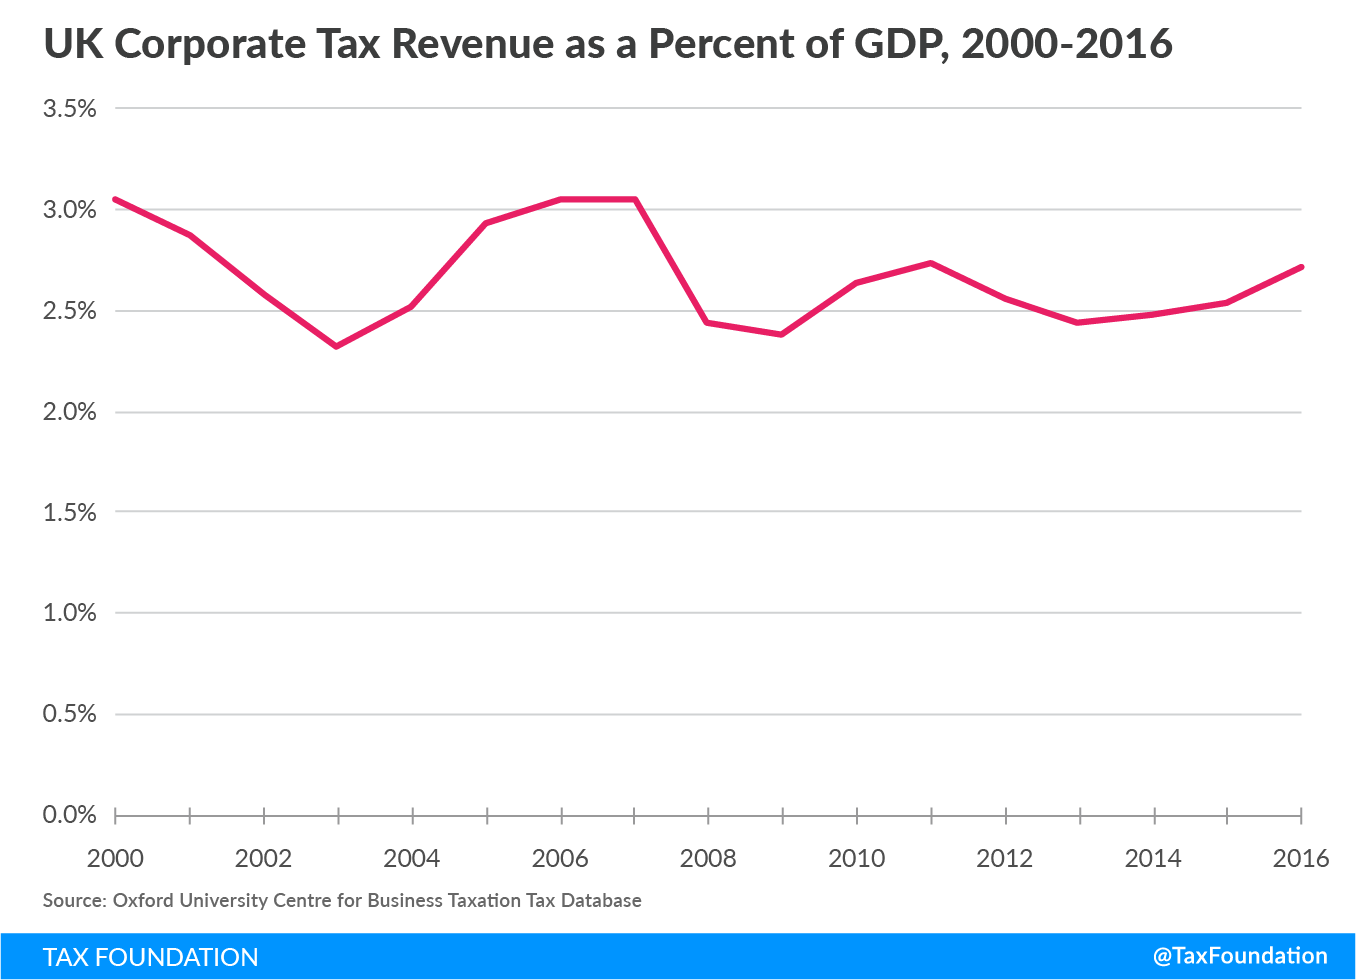 UK Corporate Tax Revenue, 2000-2016